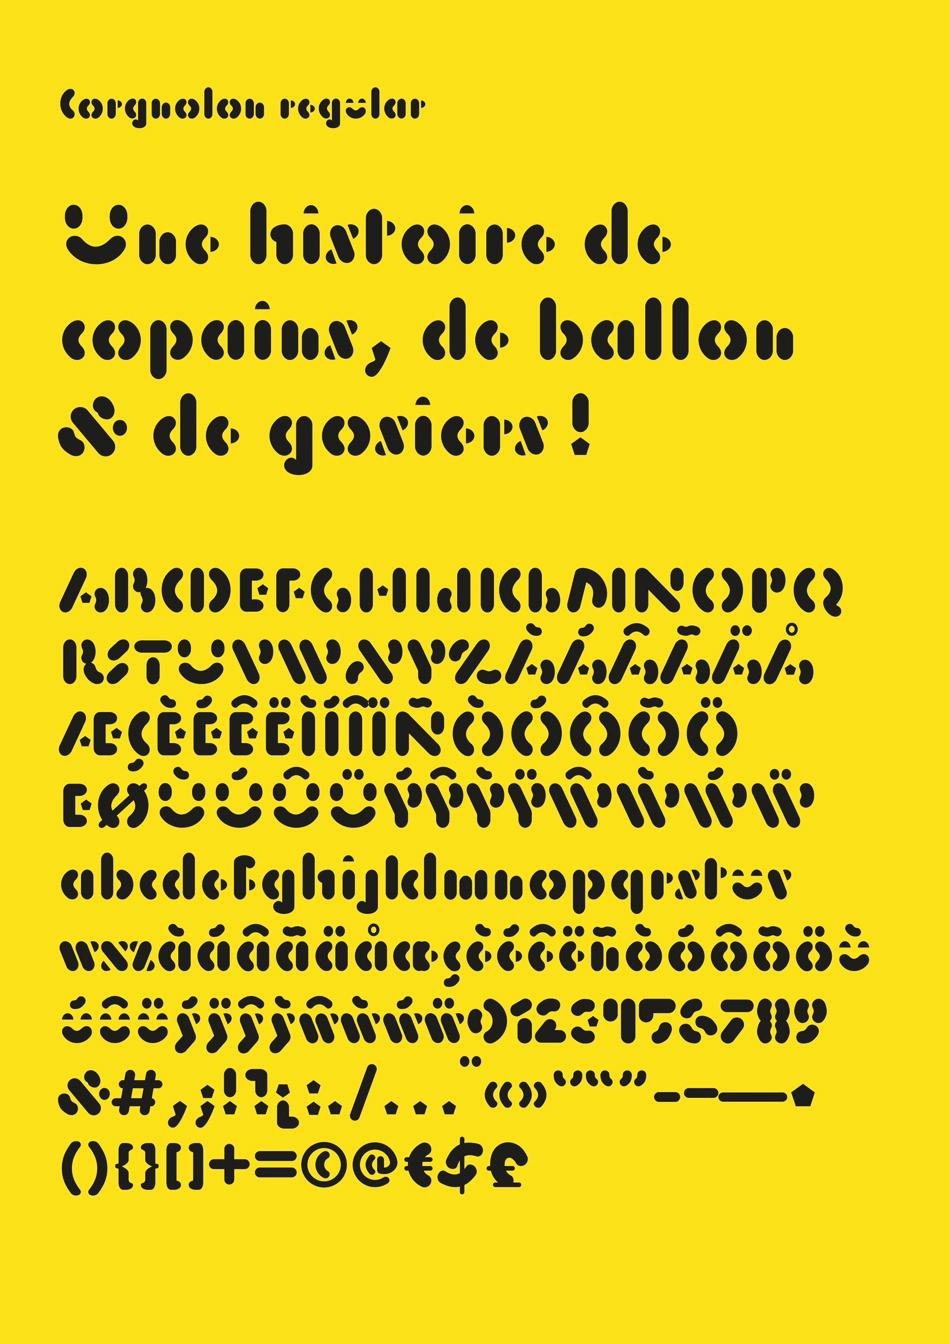 visuel jaune avec texte noir ES CORGNOLON, réalisation typographique Thomas Hauck